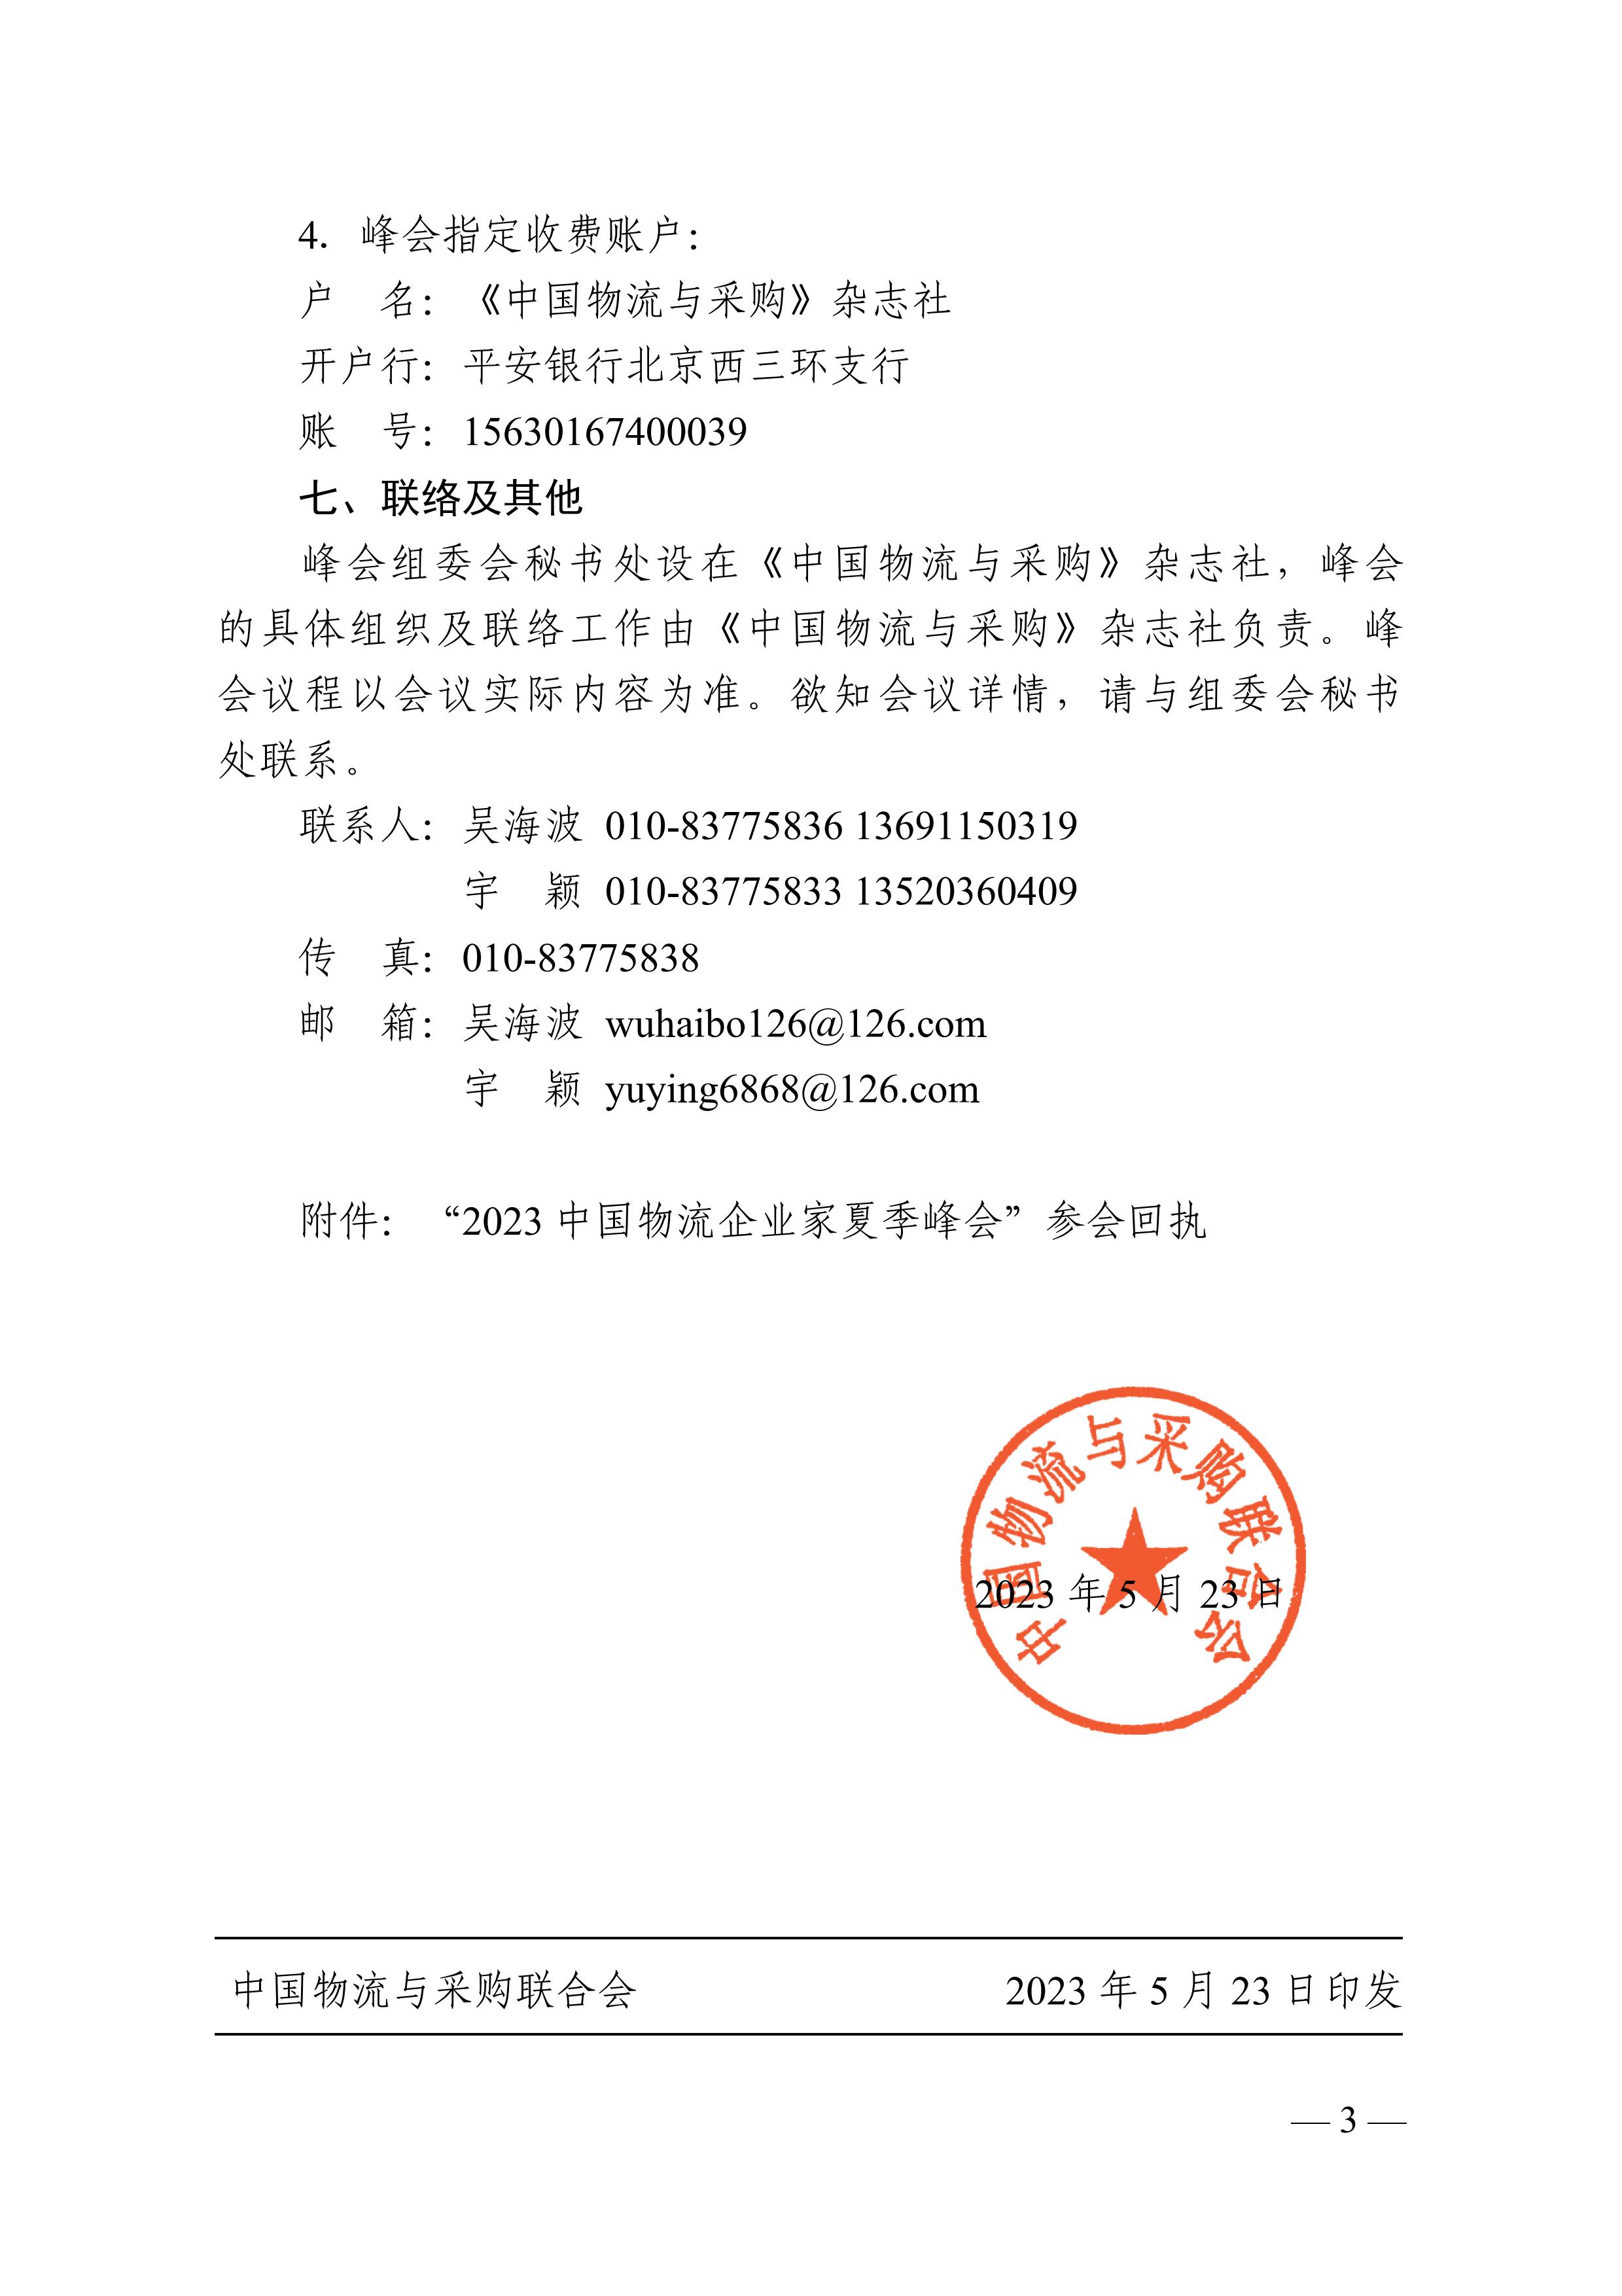 关于召开“2023中国物流企业家夏季峰会.文件通知pdf_03.jpg